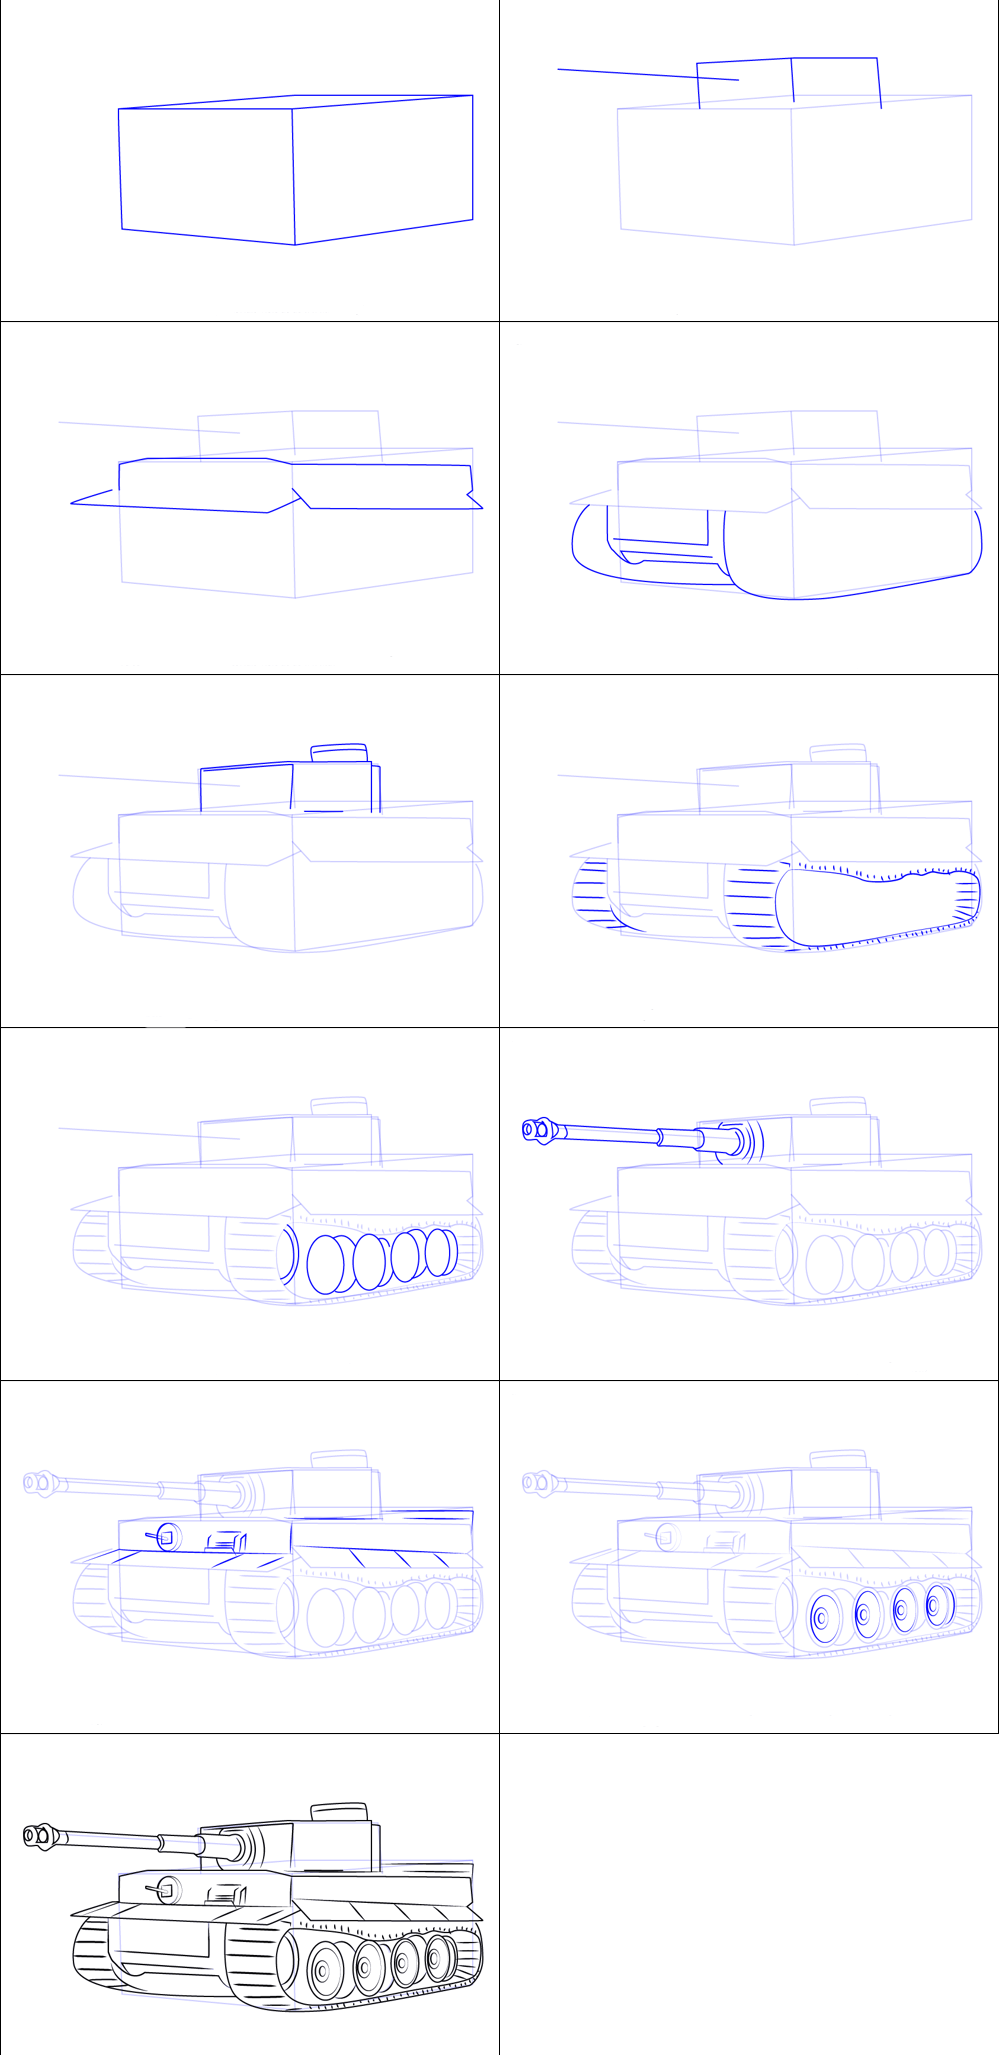 Basit bir tanki çizimi (2) çizimi